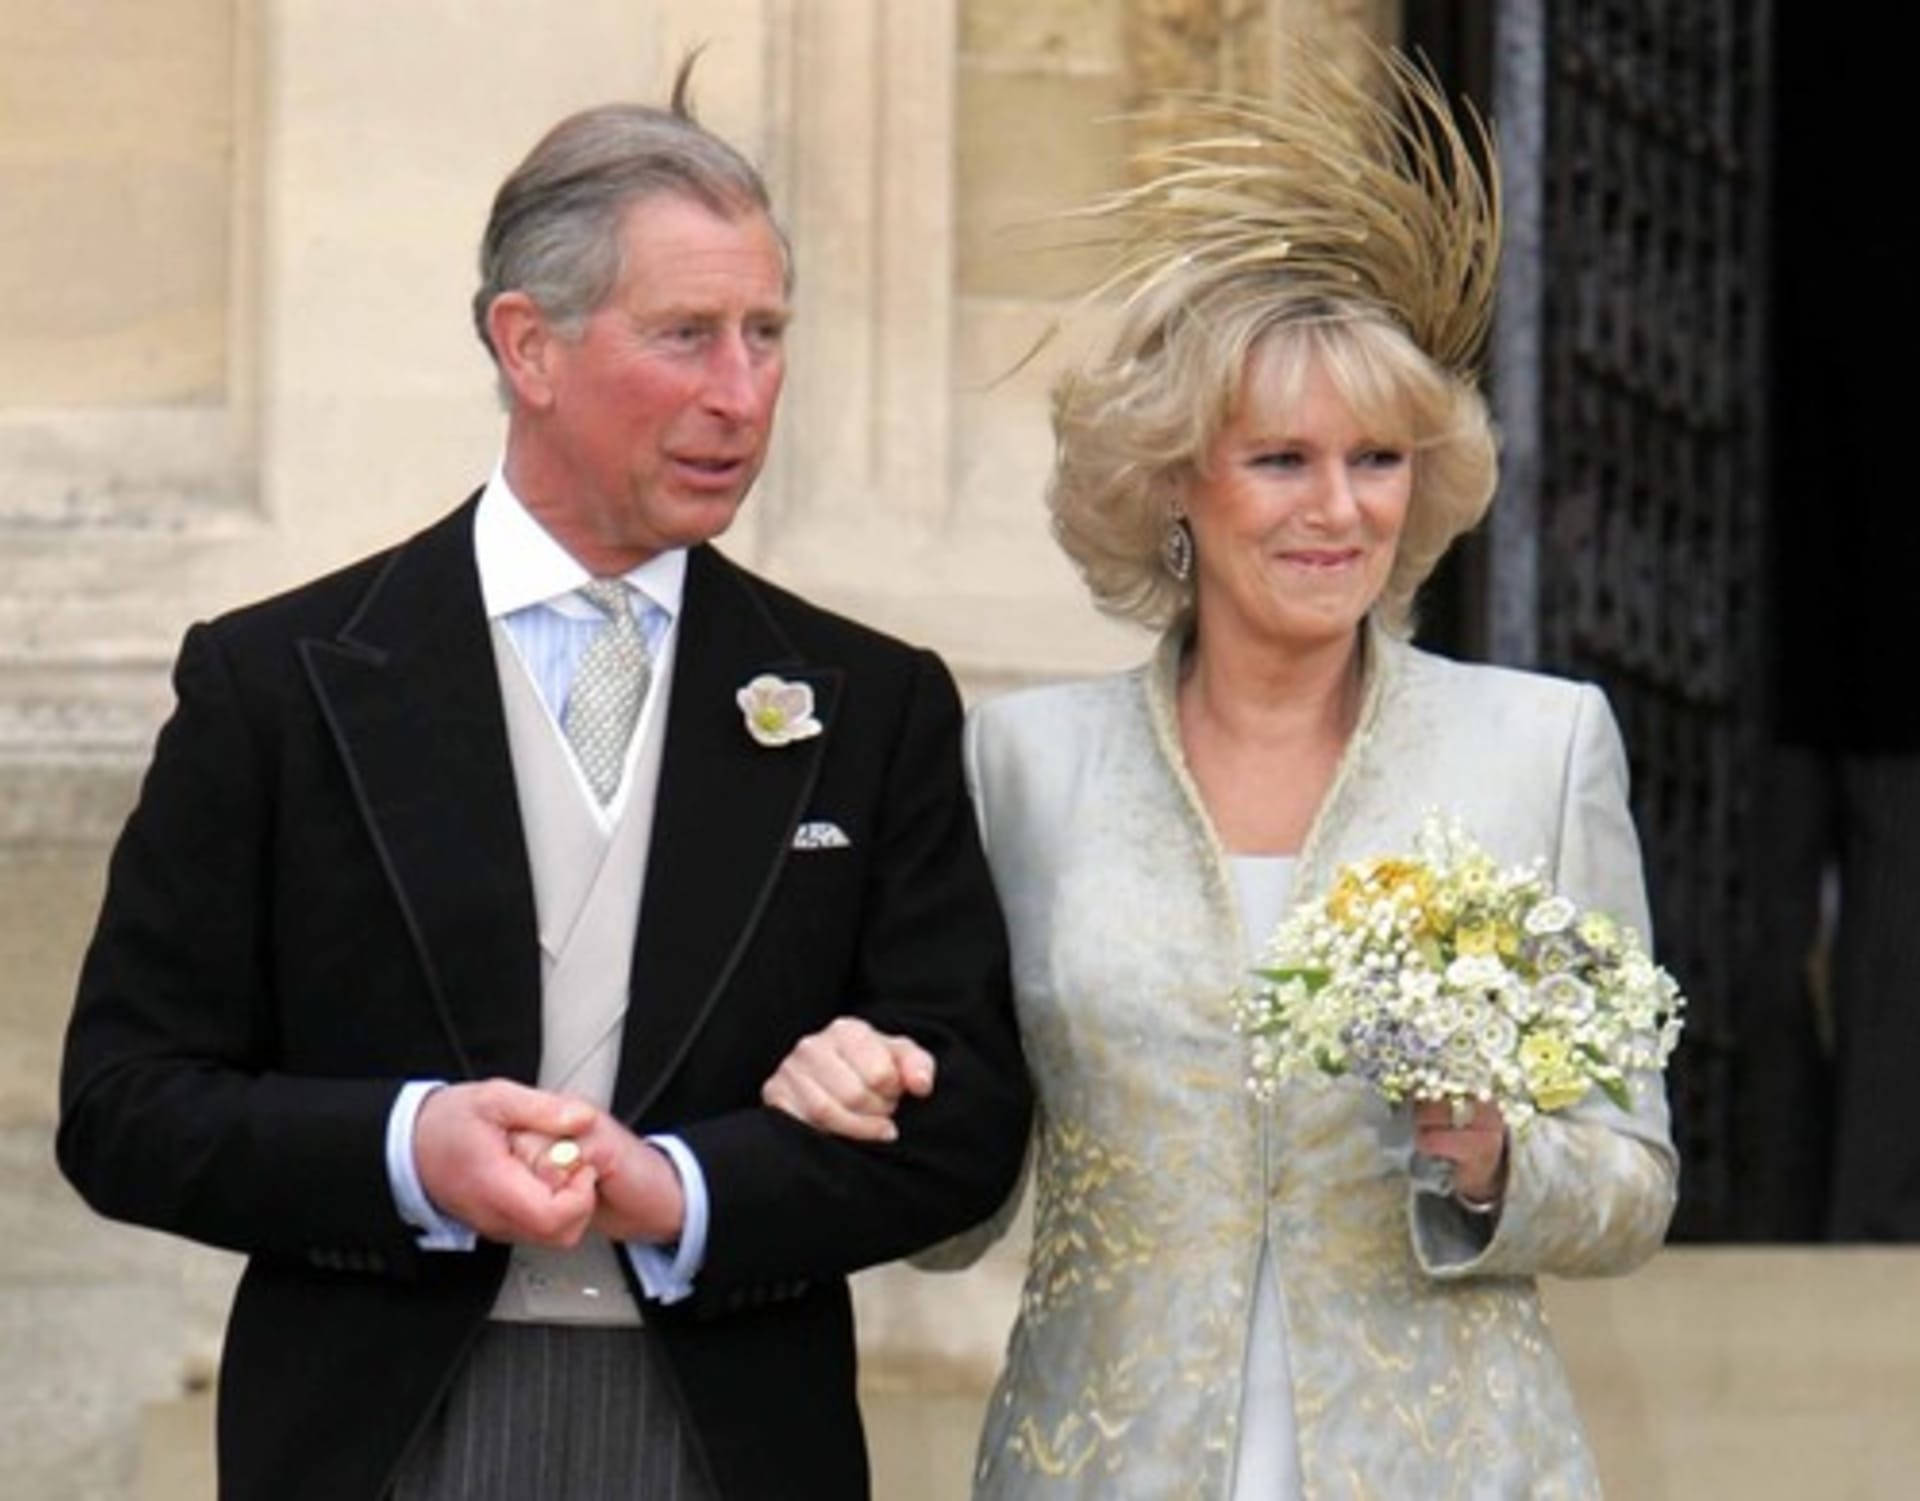 Karel si vzal svou dlouholetou lásku Camillu Parkerovou Bowlesovou v roce 2005.